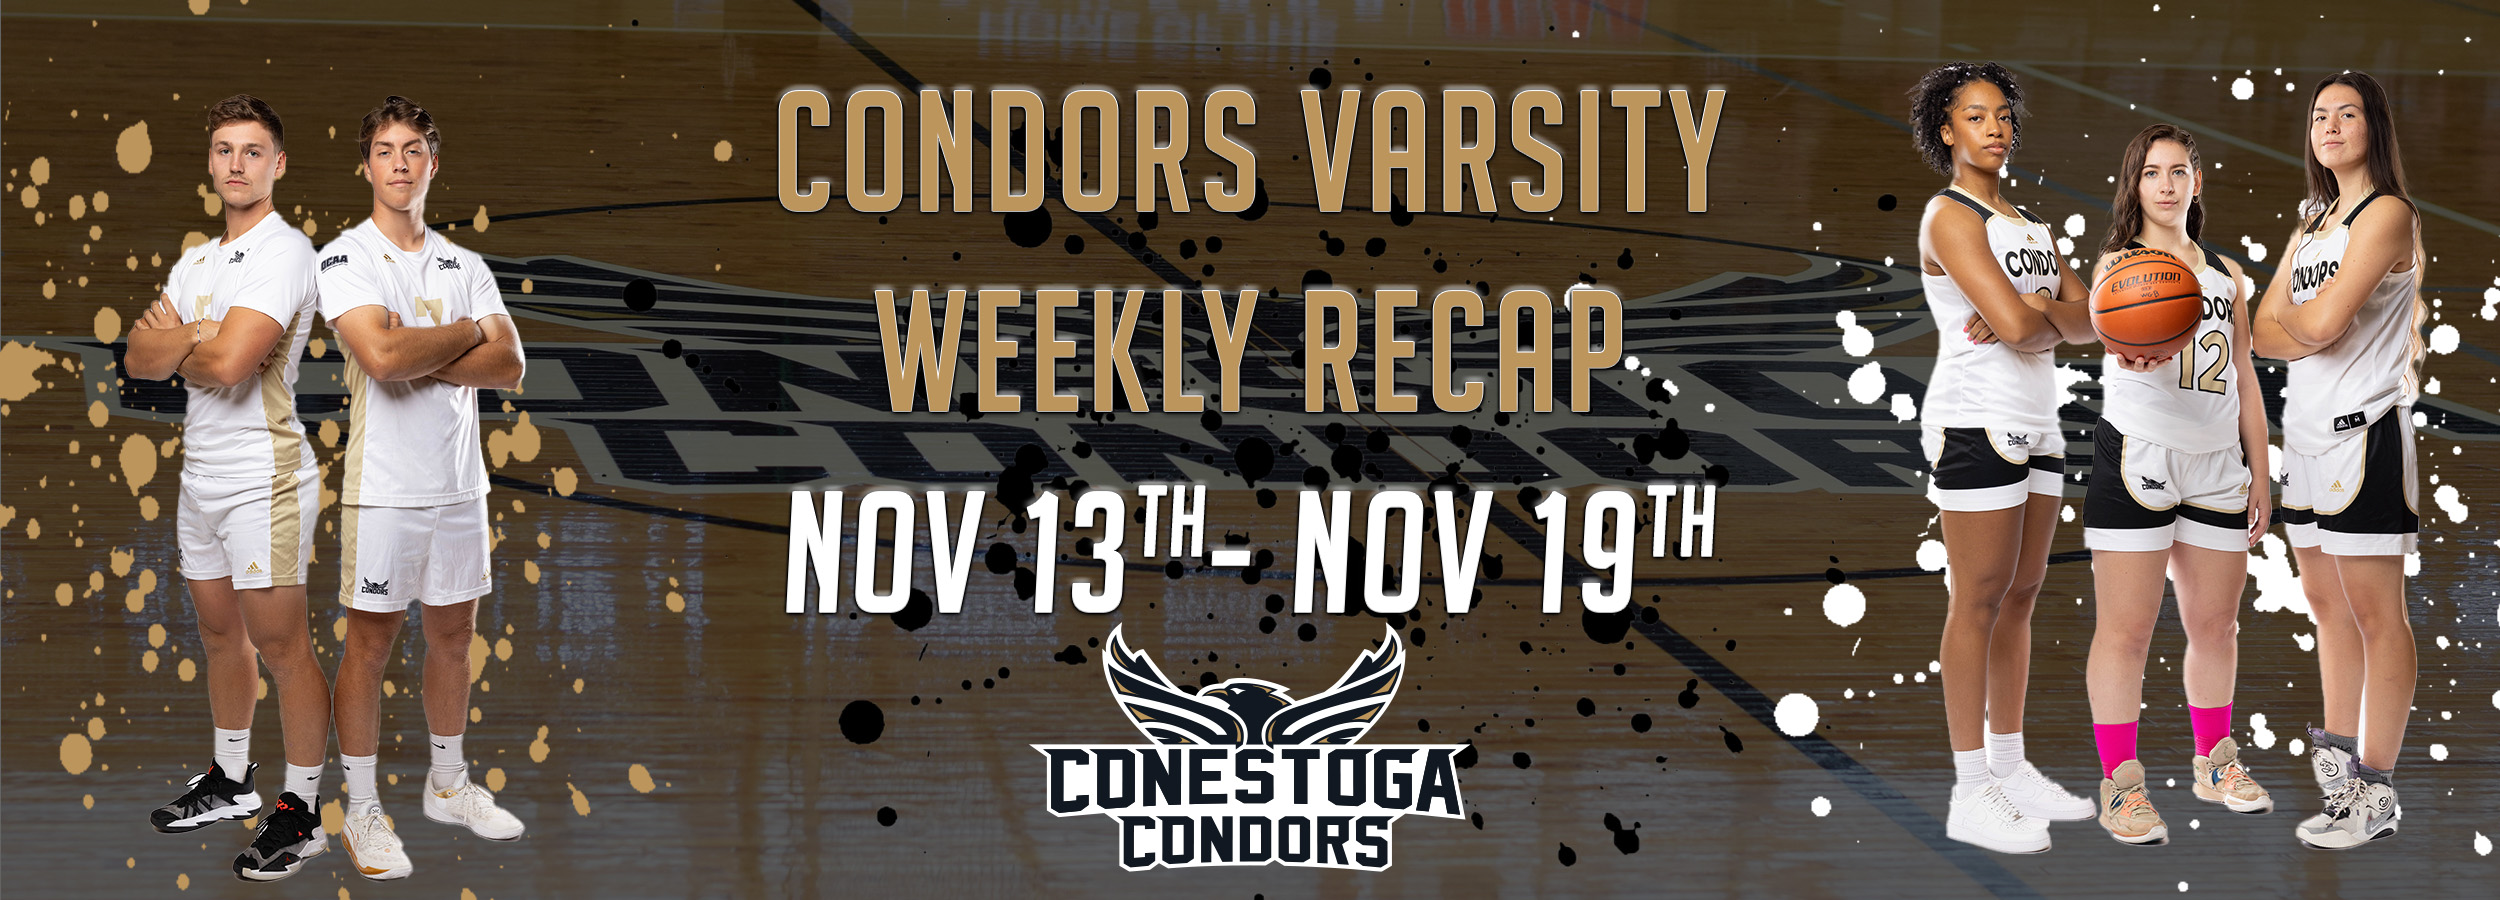 A headline reading Condors Varsity Weekly Recap Nov 13th - 19th